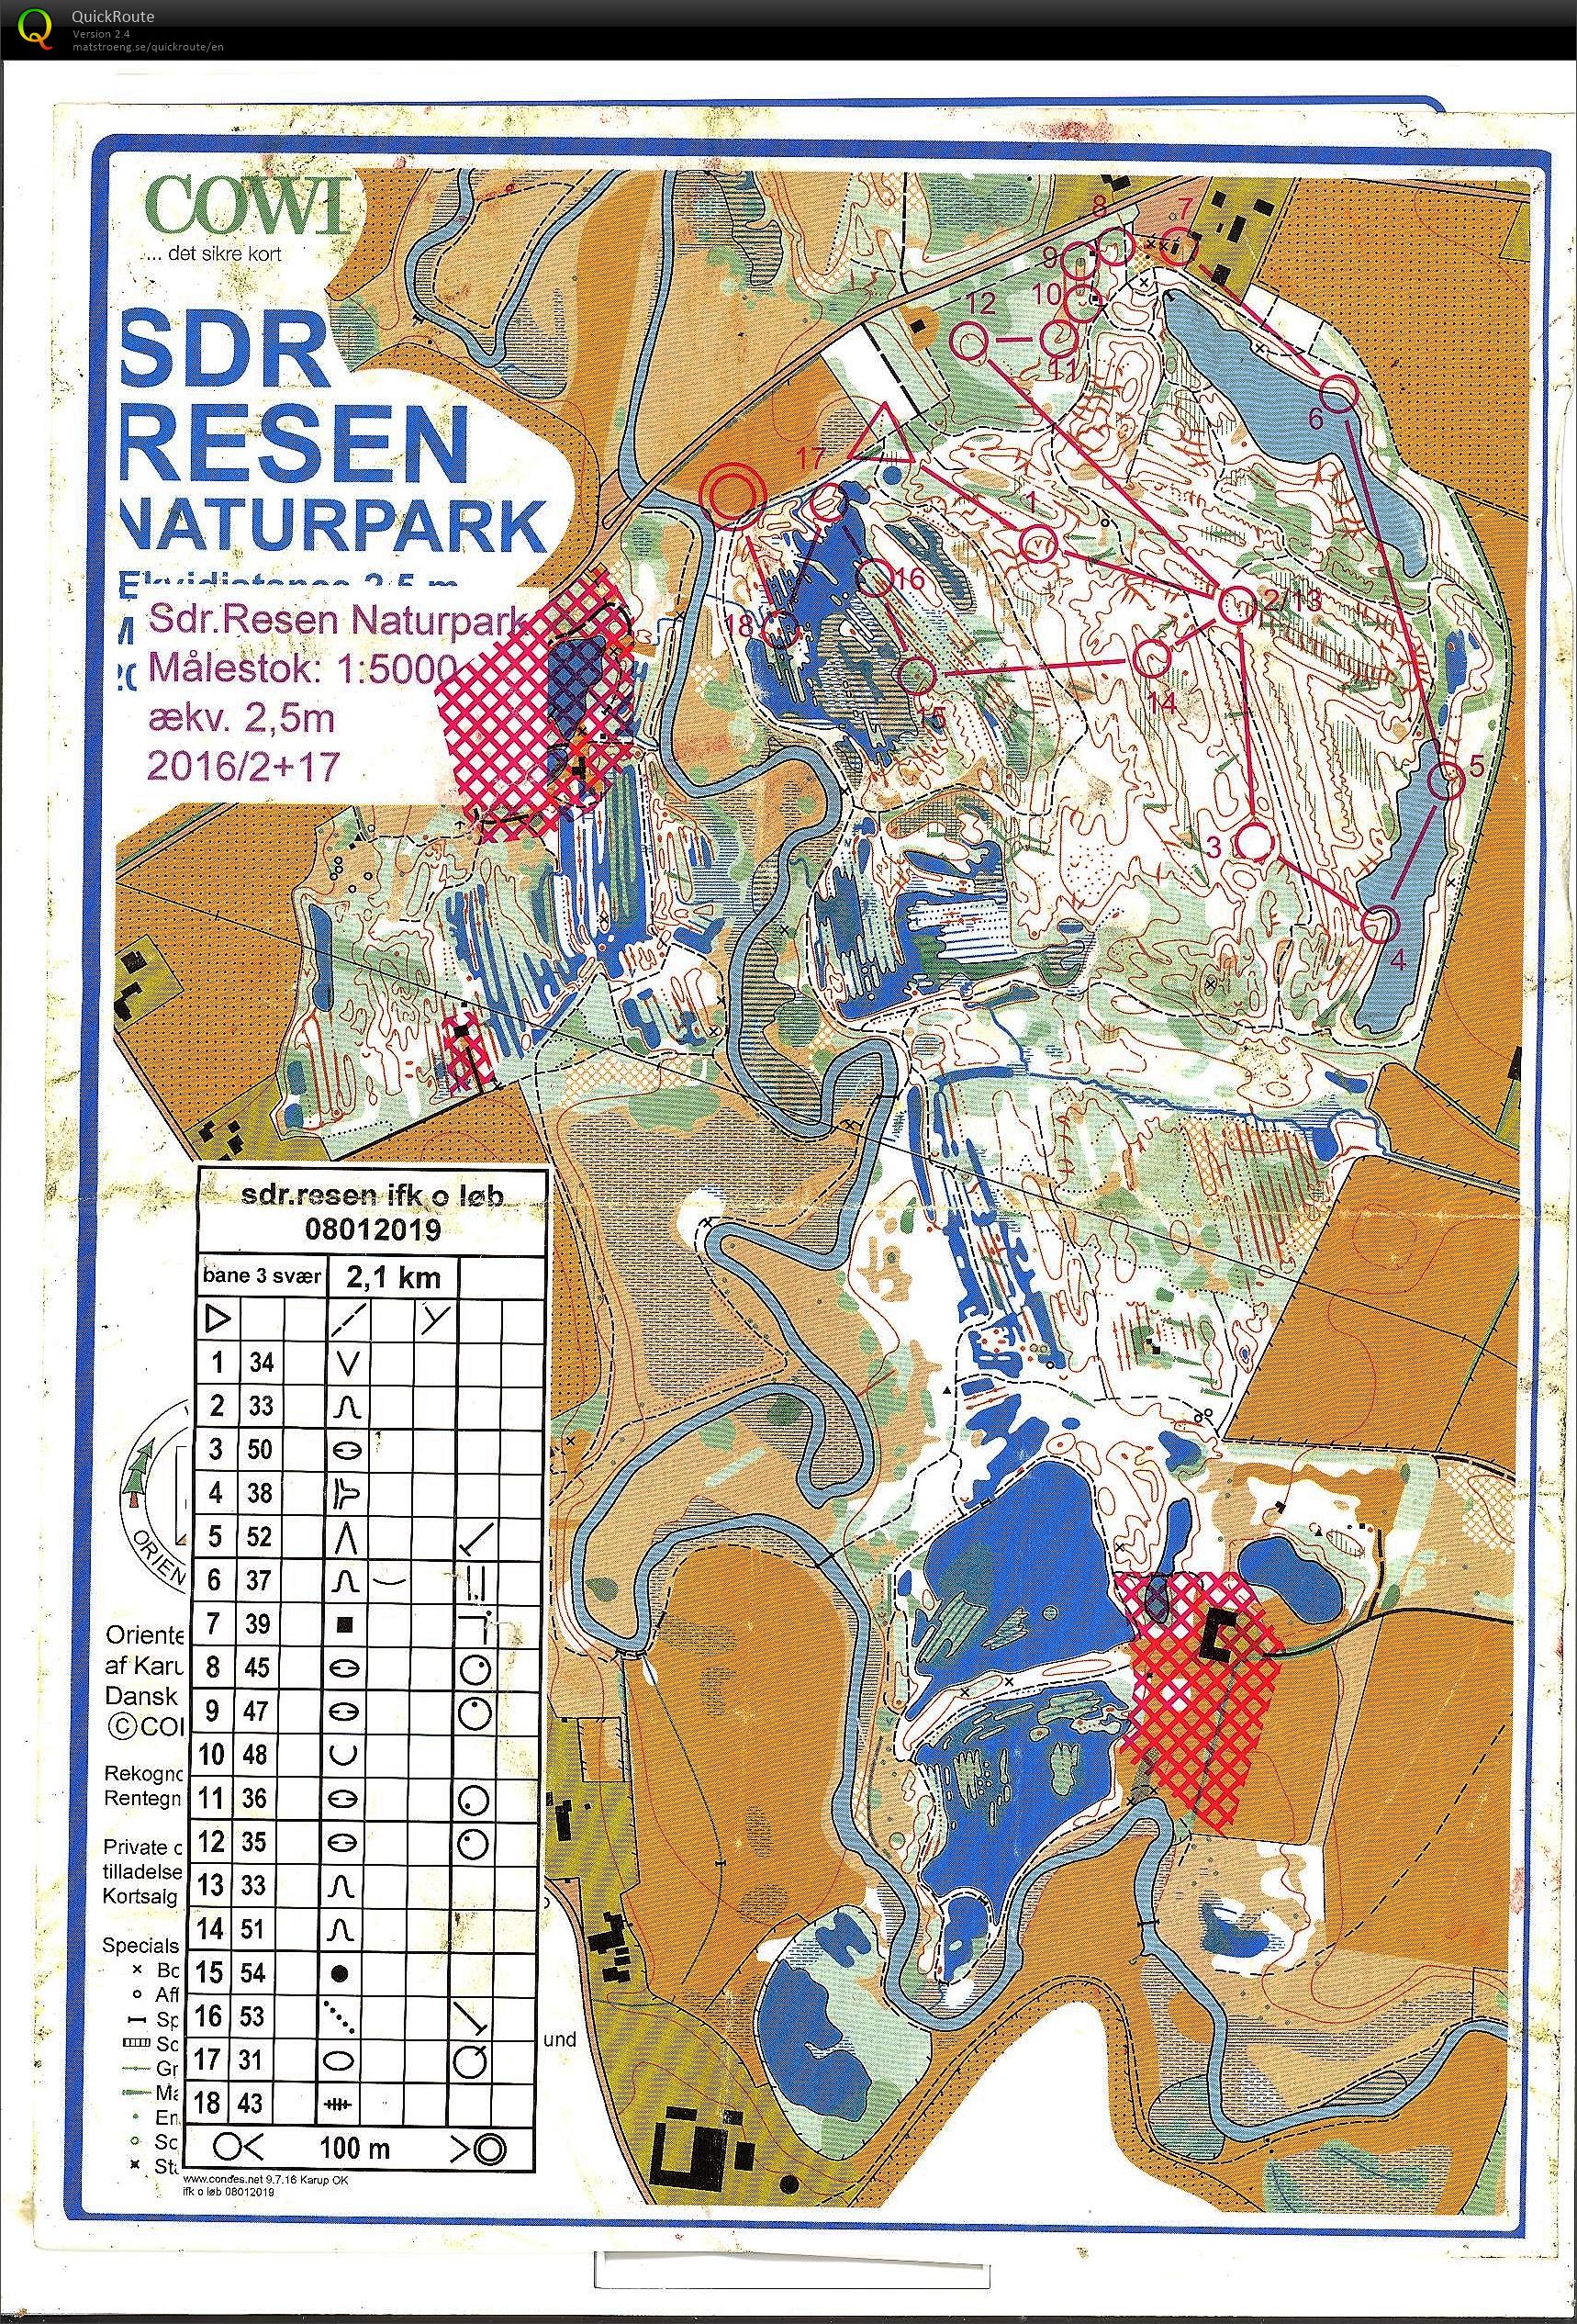 Resen Naturpark (08-01-2019)